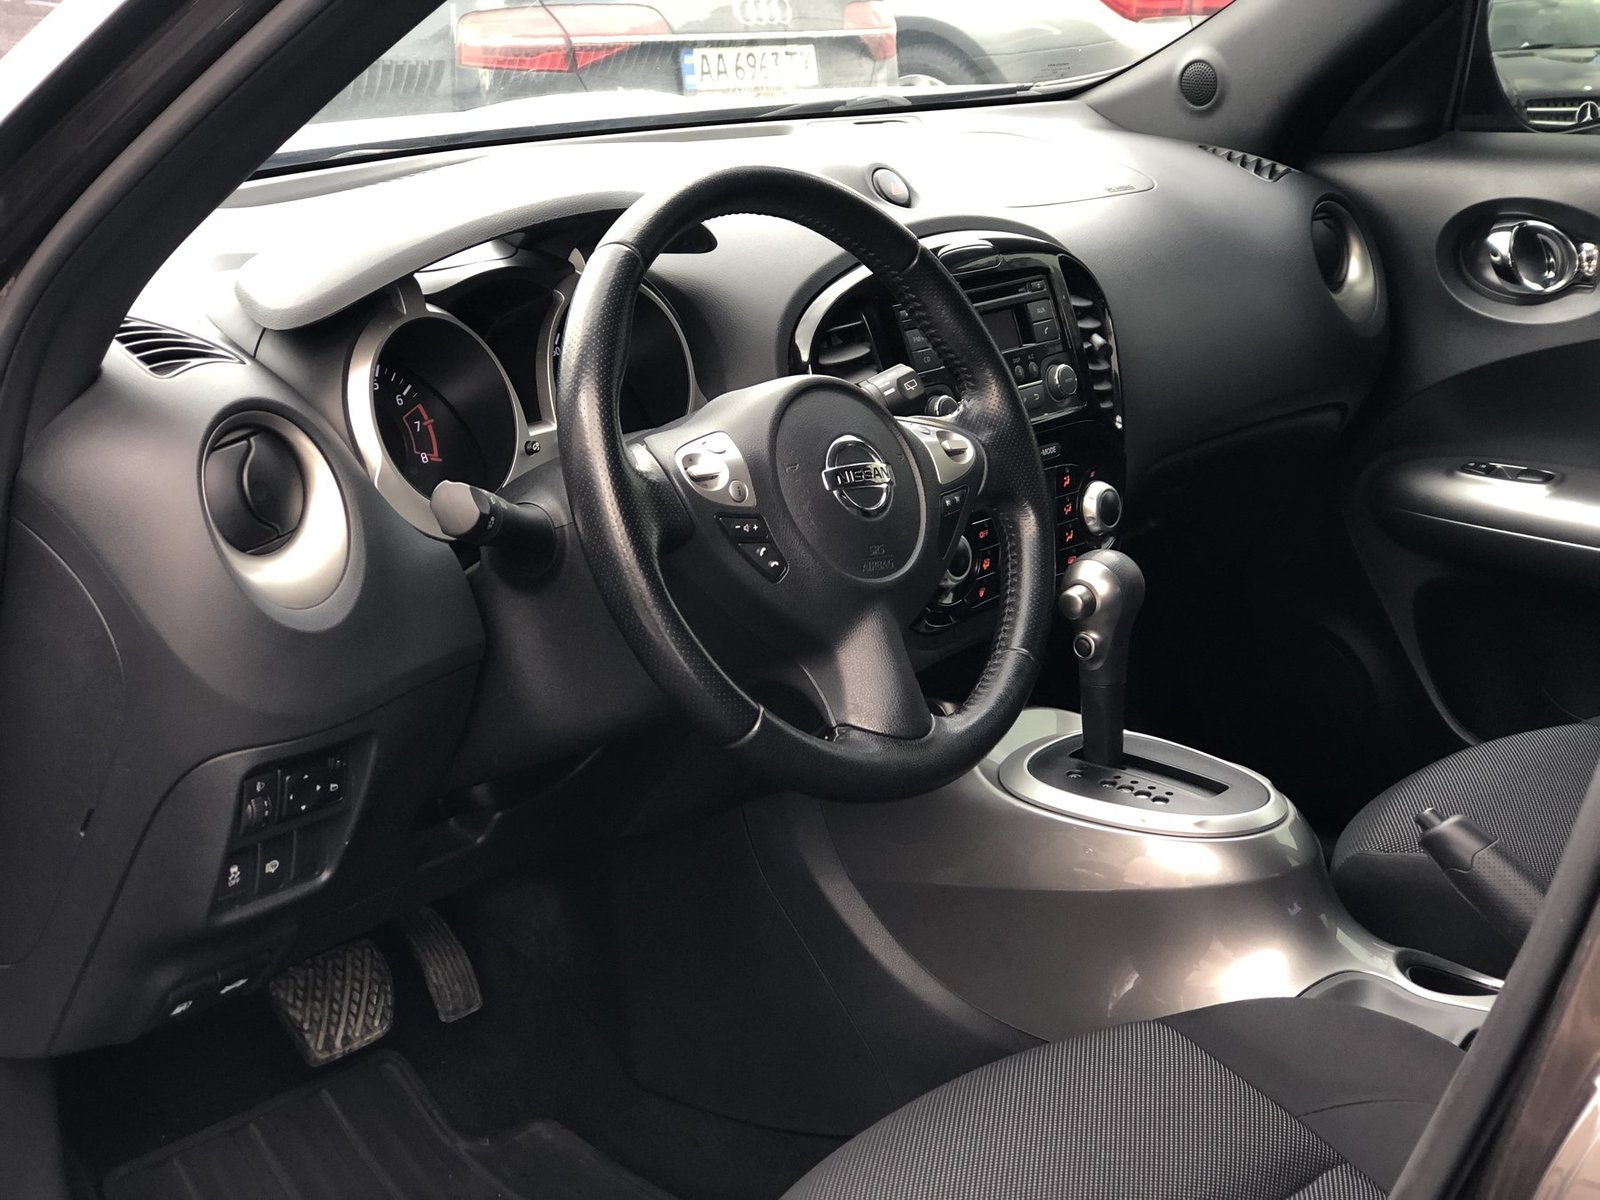 Nissan Juke inside 2013